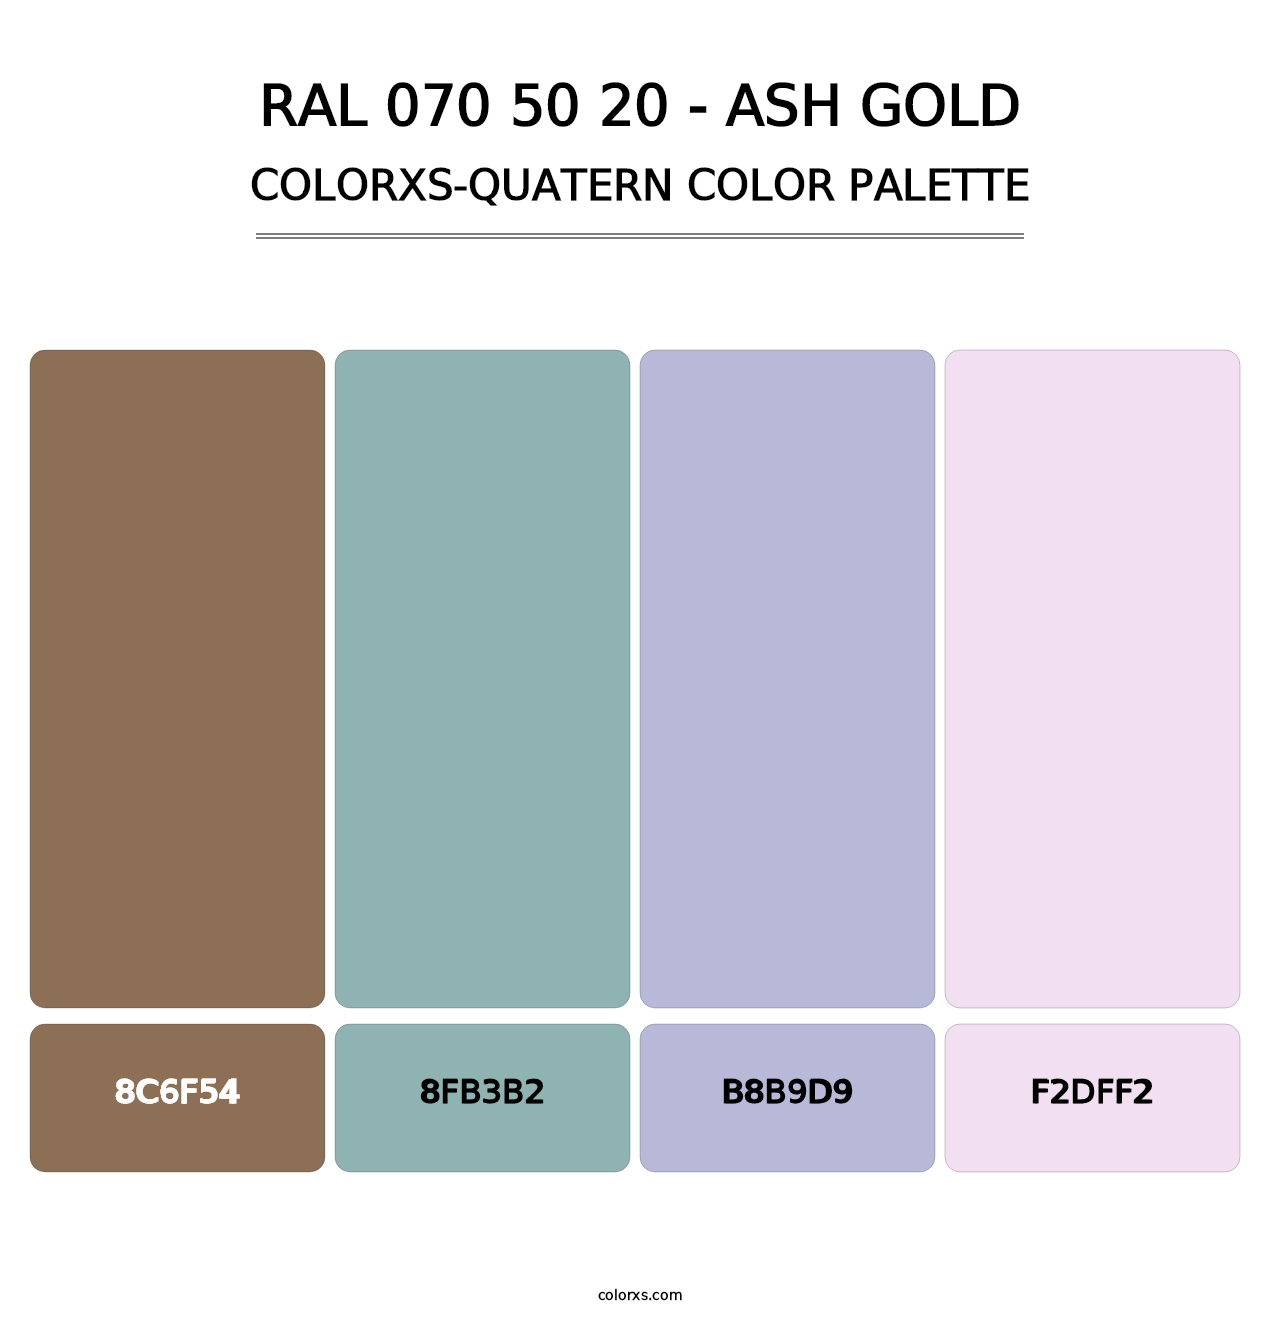 RAL 070 50 20 - Ash Gold - Colorxs Quatern Palette